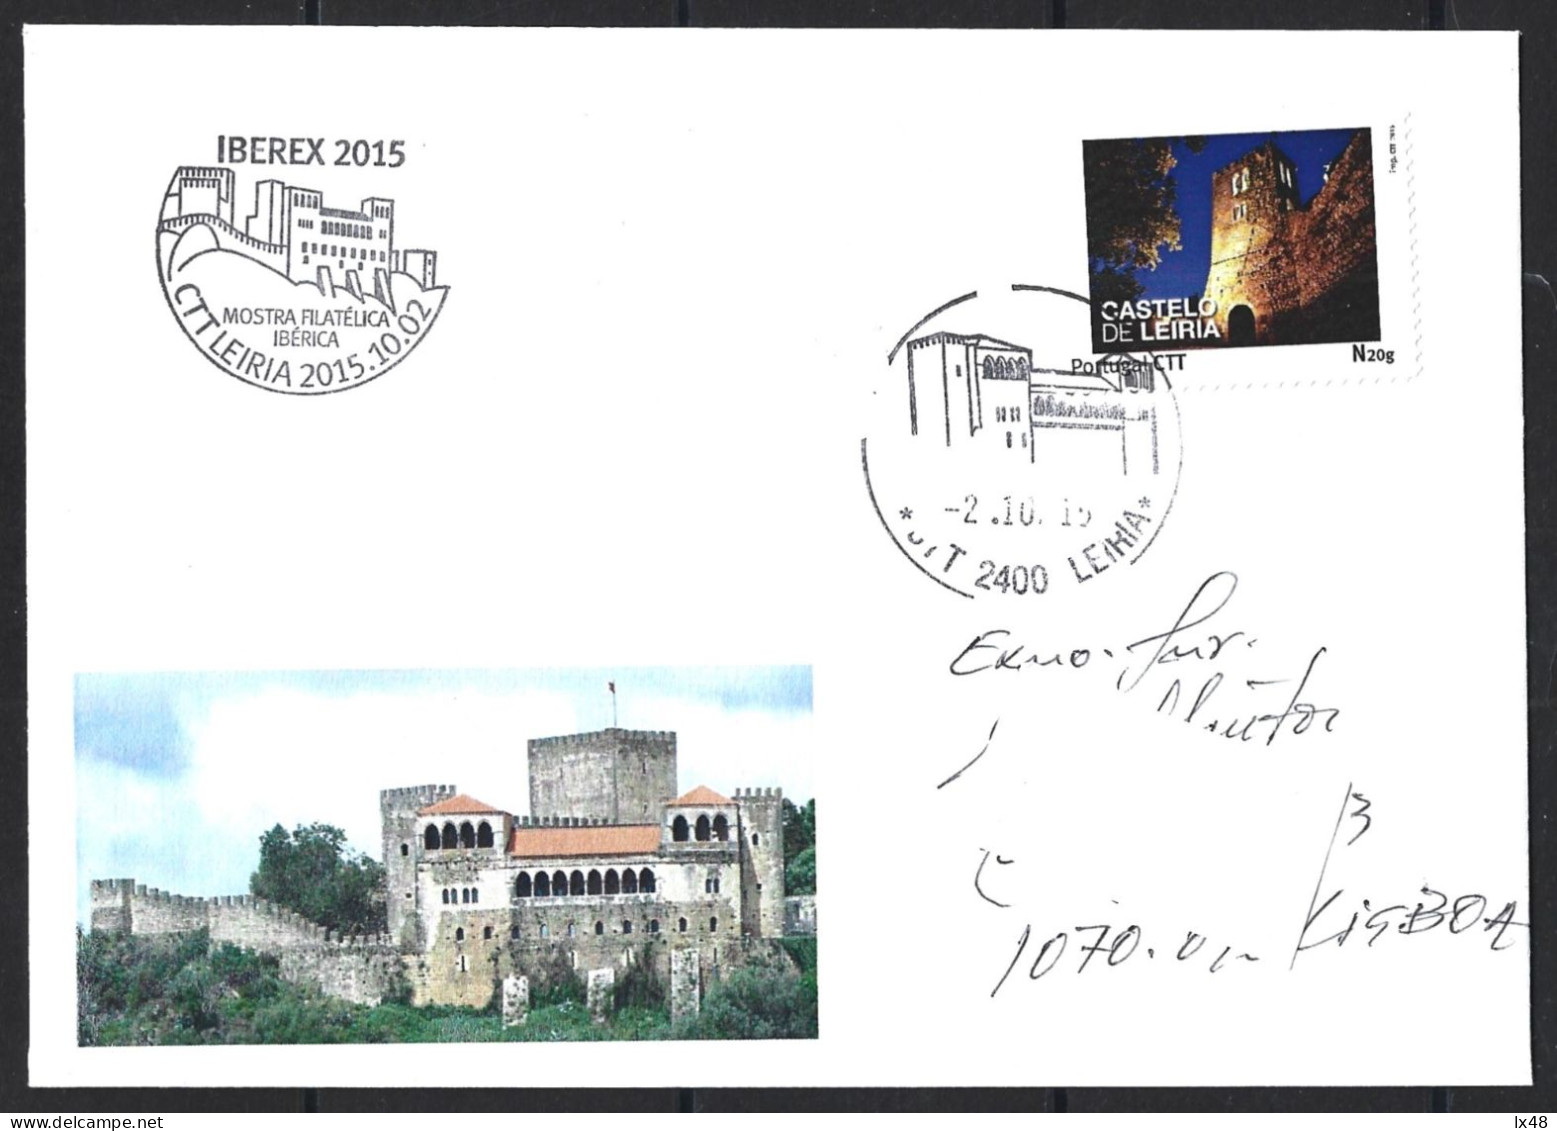 Castelo De Leiria. Envelope Circulado Com Stamp Personalizado E Obliteração Do Castelo De Leiria 2015. Leiria Castle. Ci - Covers & Documents